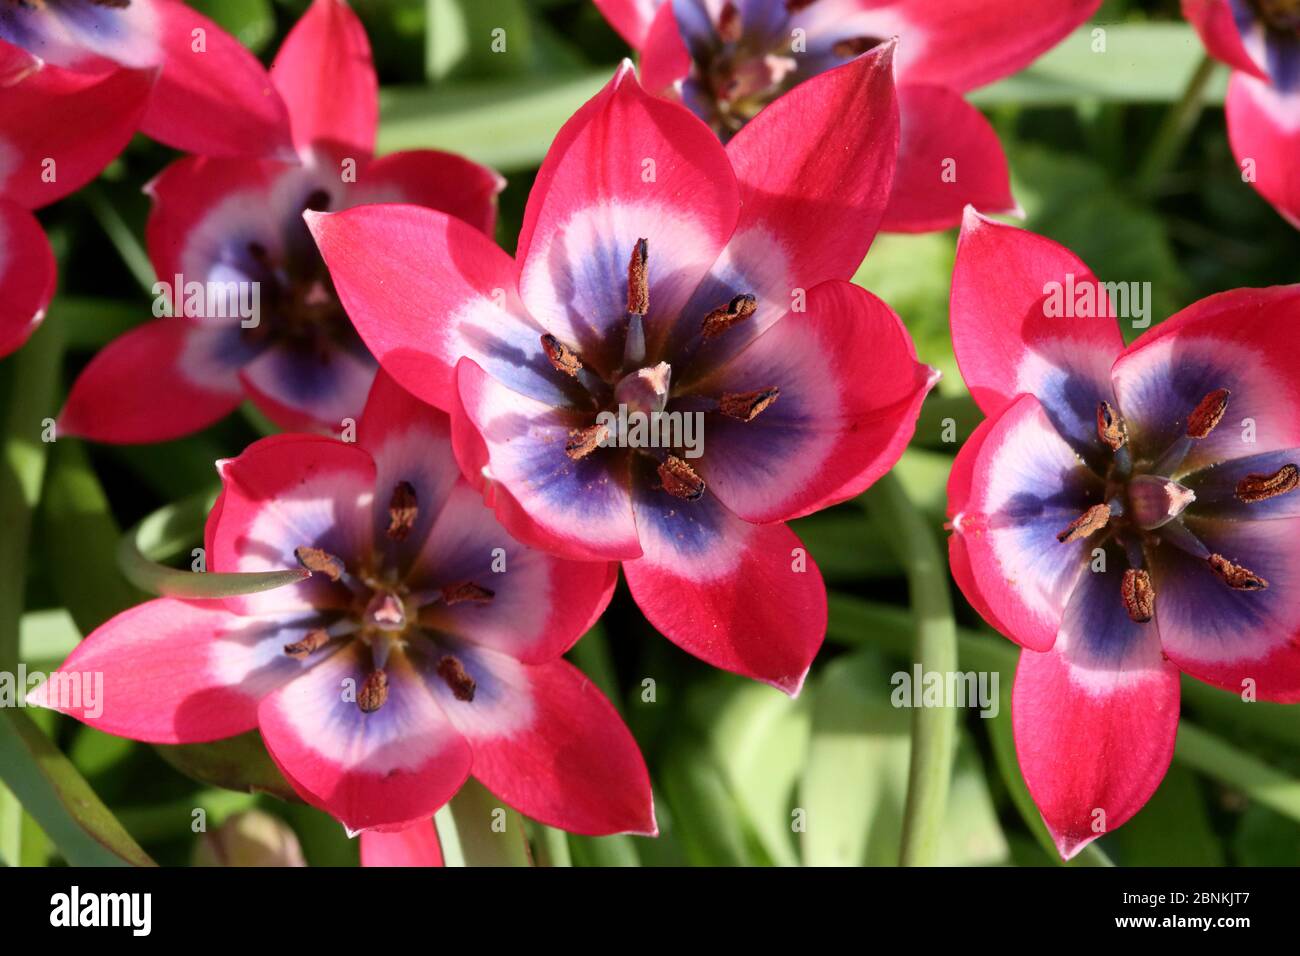 Open flower of a miniature tulipa - tulip Stock Photo